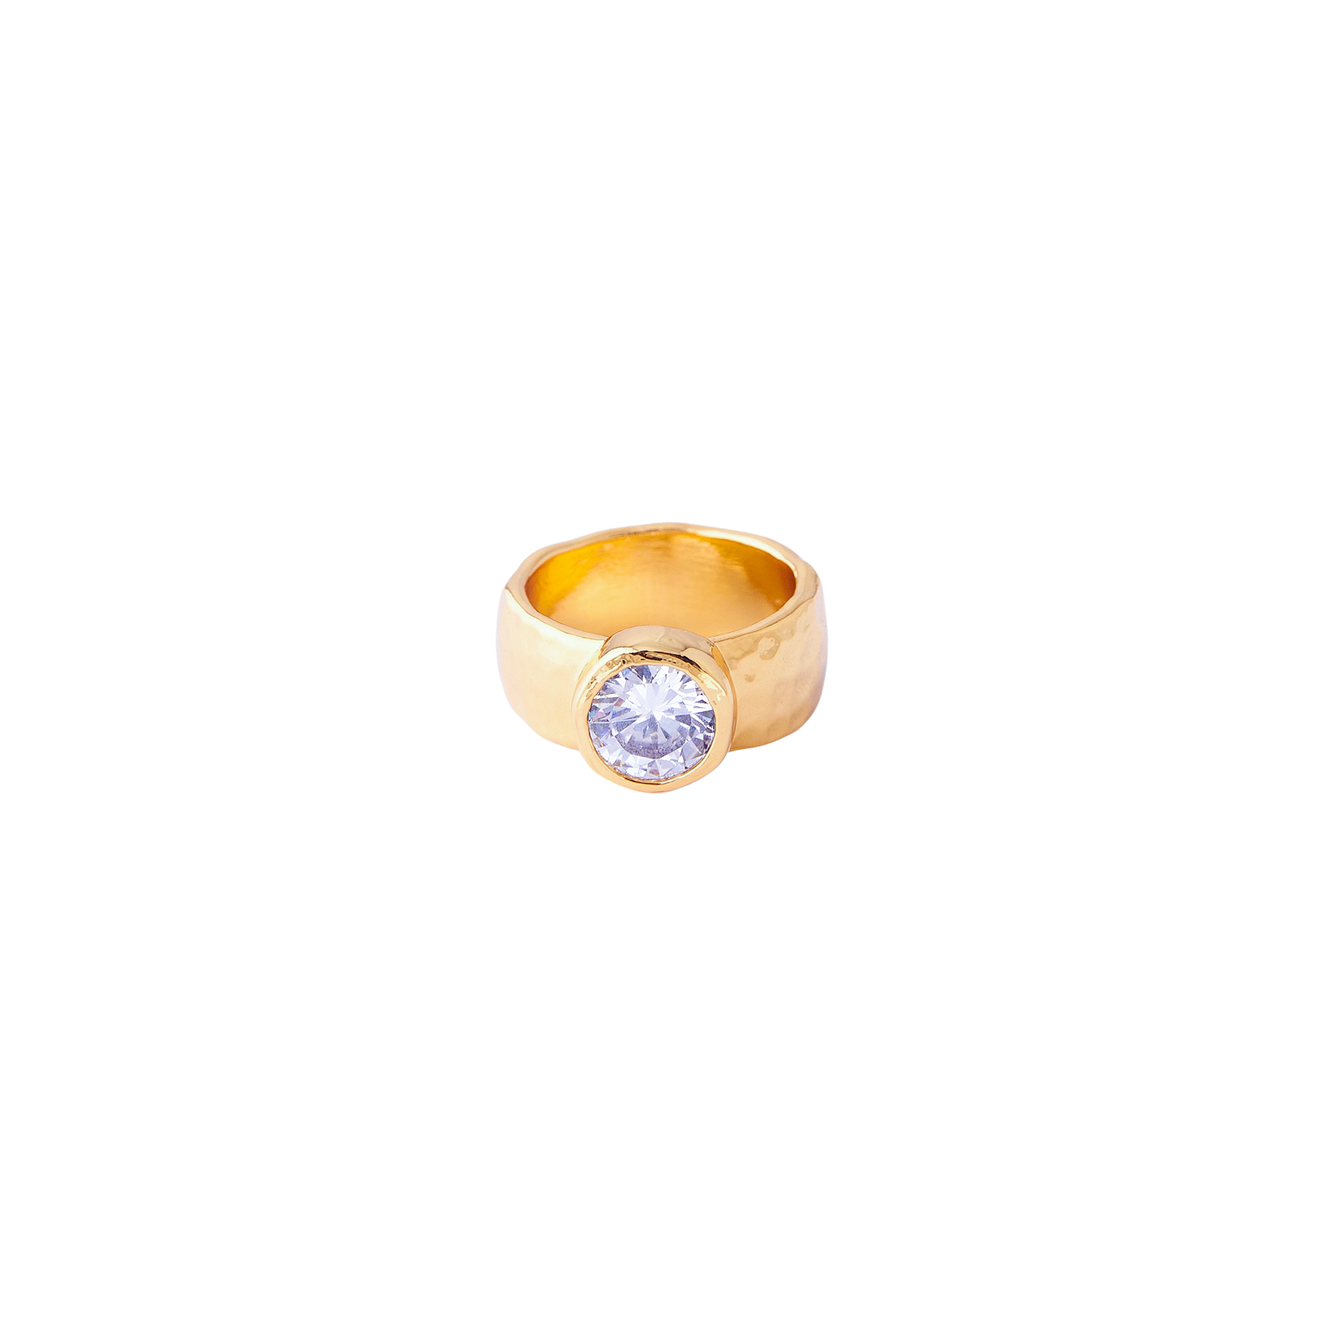 Herald Percy Золотистое кольцо с крупным кристаллом